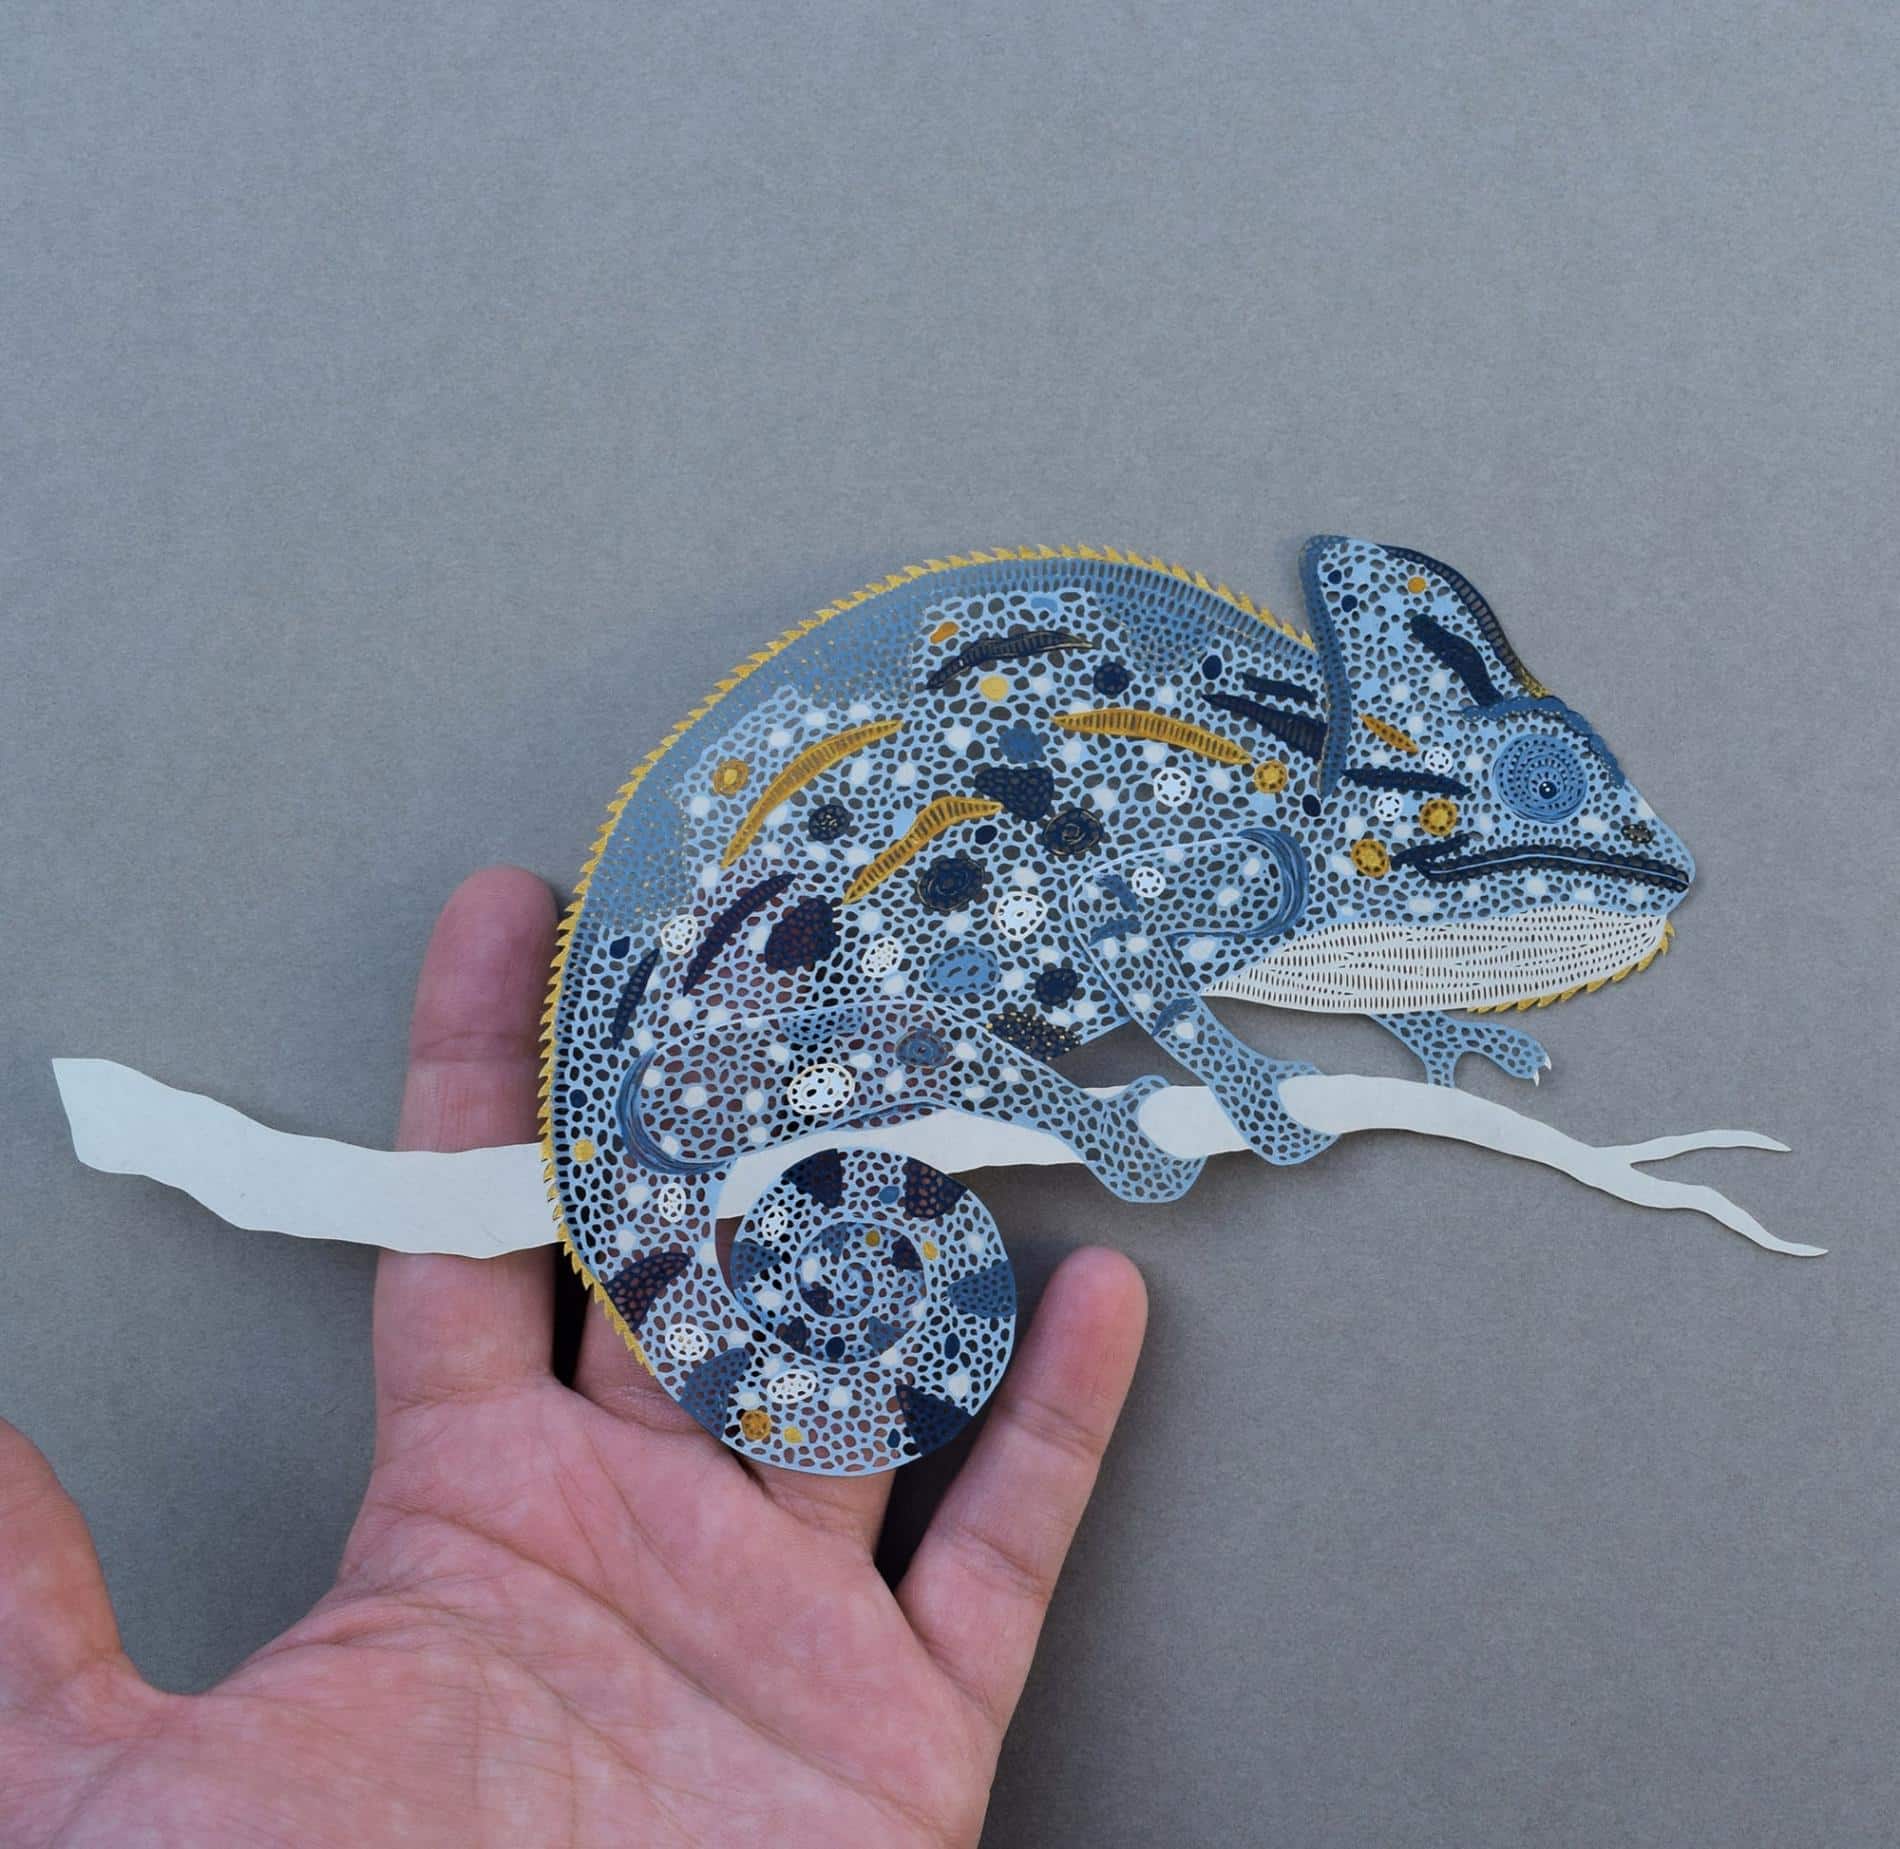 piel de camaleon creada con papel cortado en la obra de pippa dyrlaga